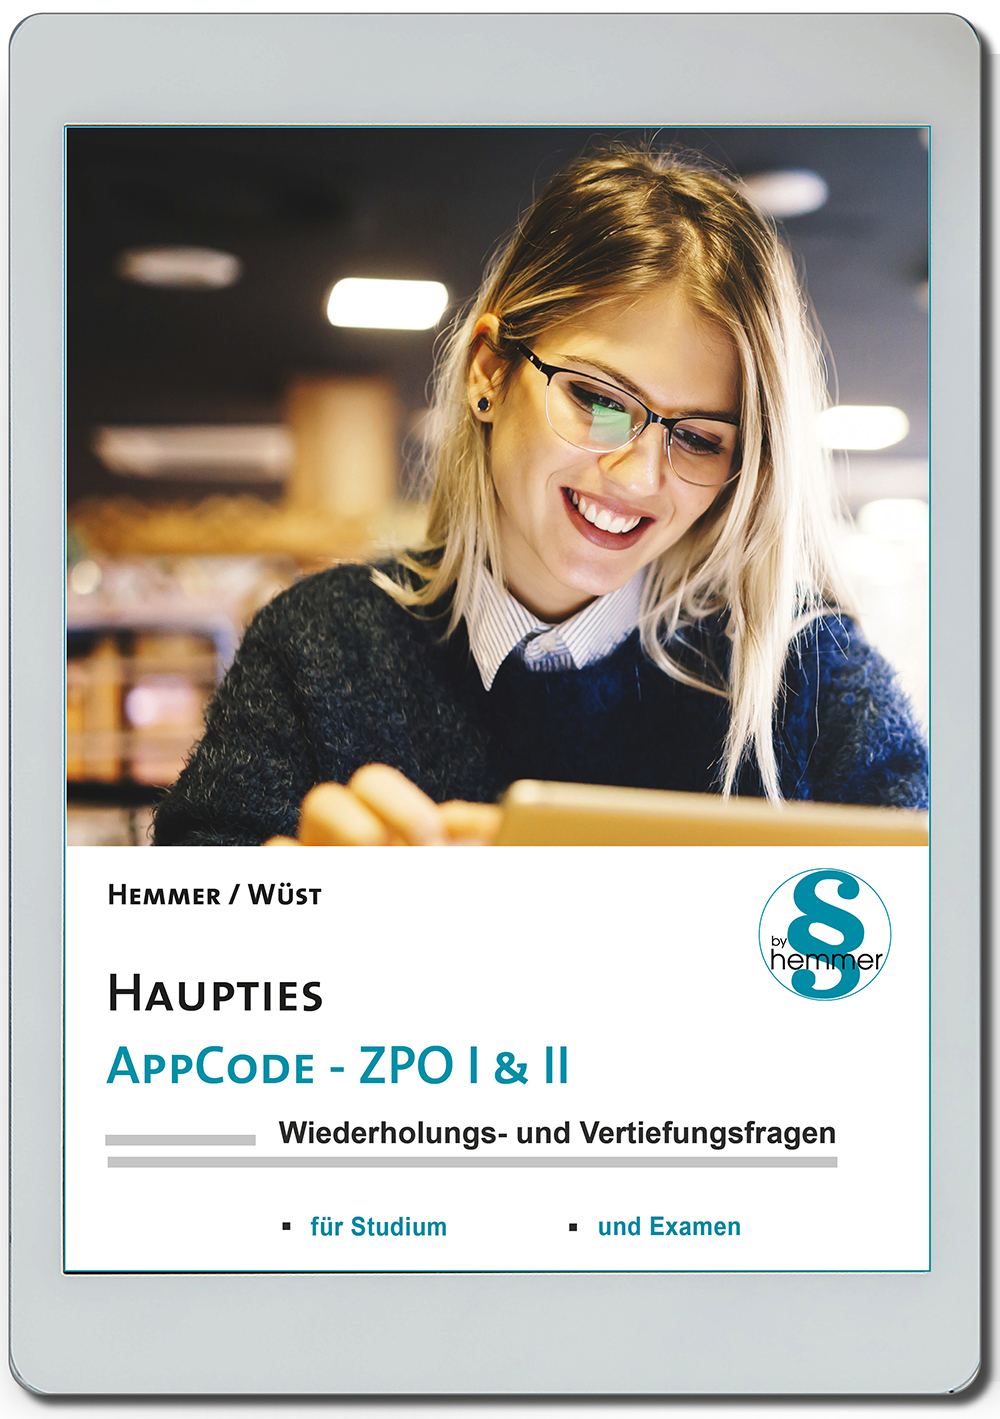 AppCode - haupties - Ziviprozessrecht I & II